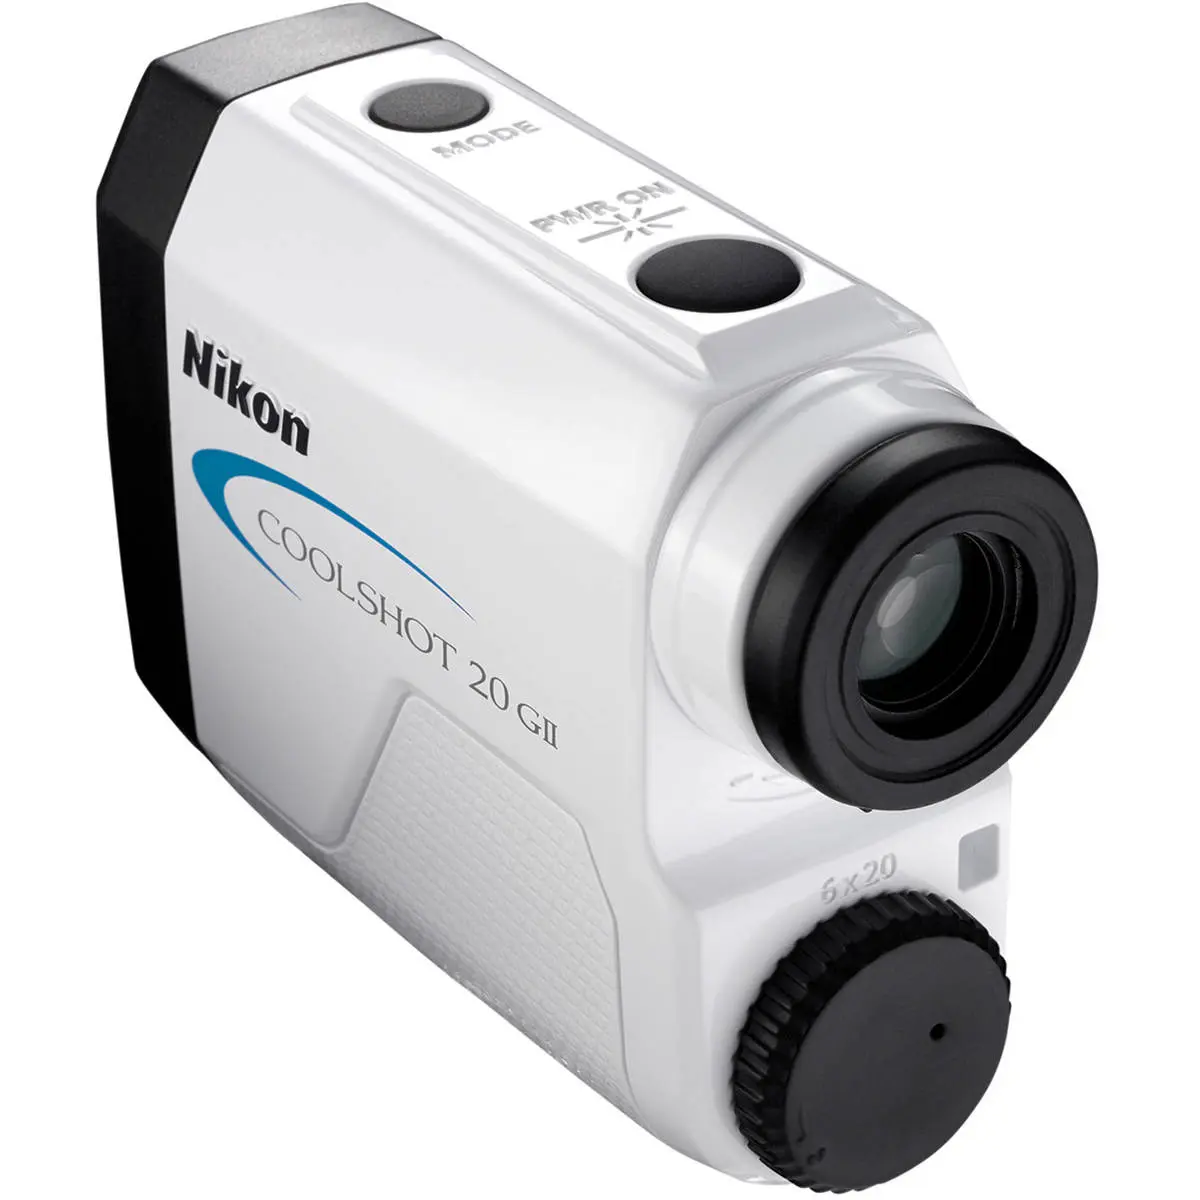 4. Nikon Coolshot 20 GII 6x20 Golf Laser Rangefinder